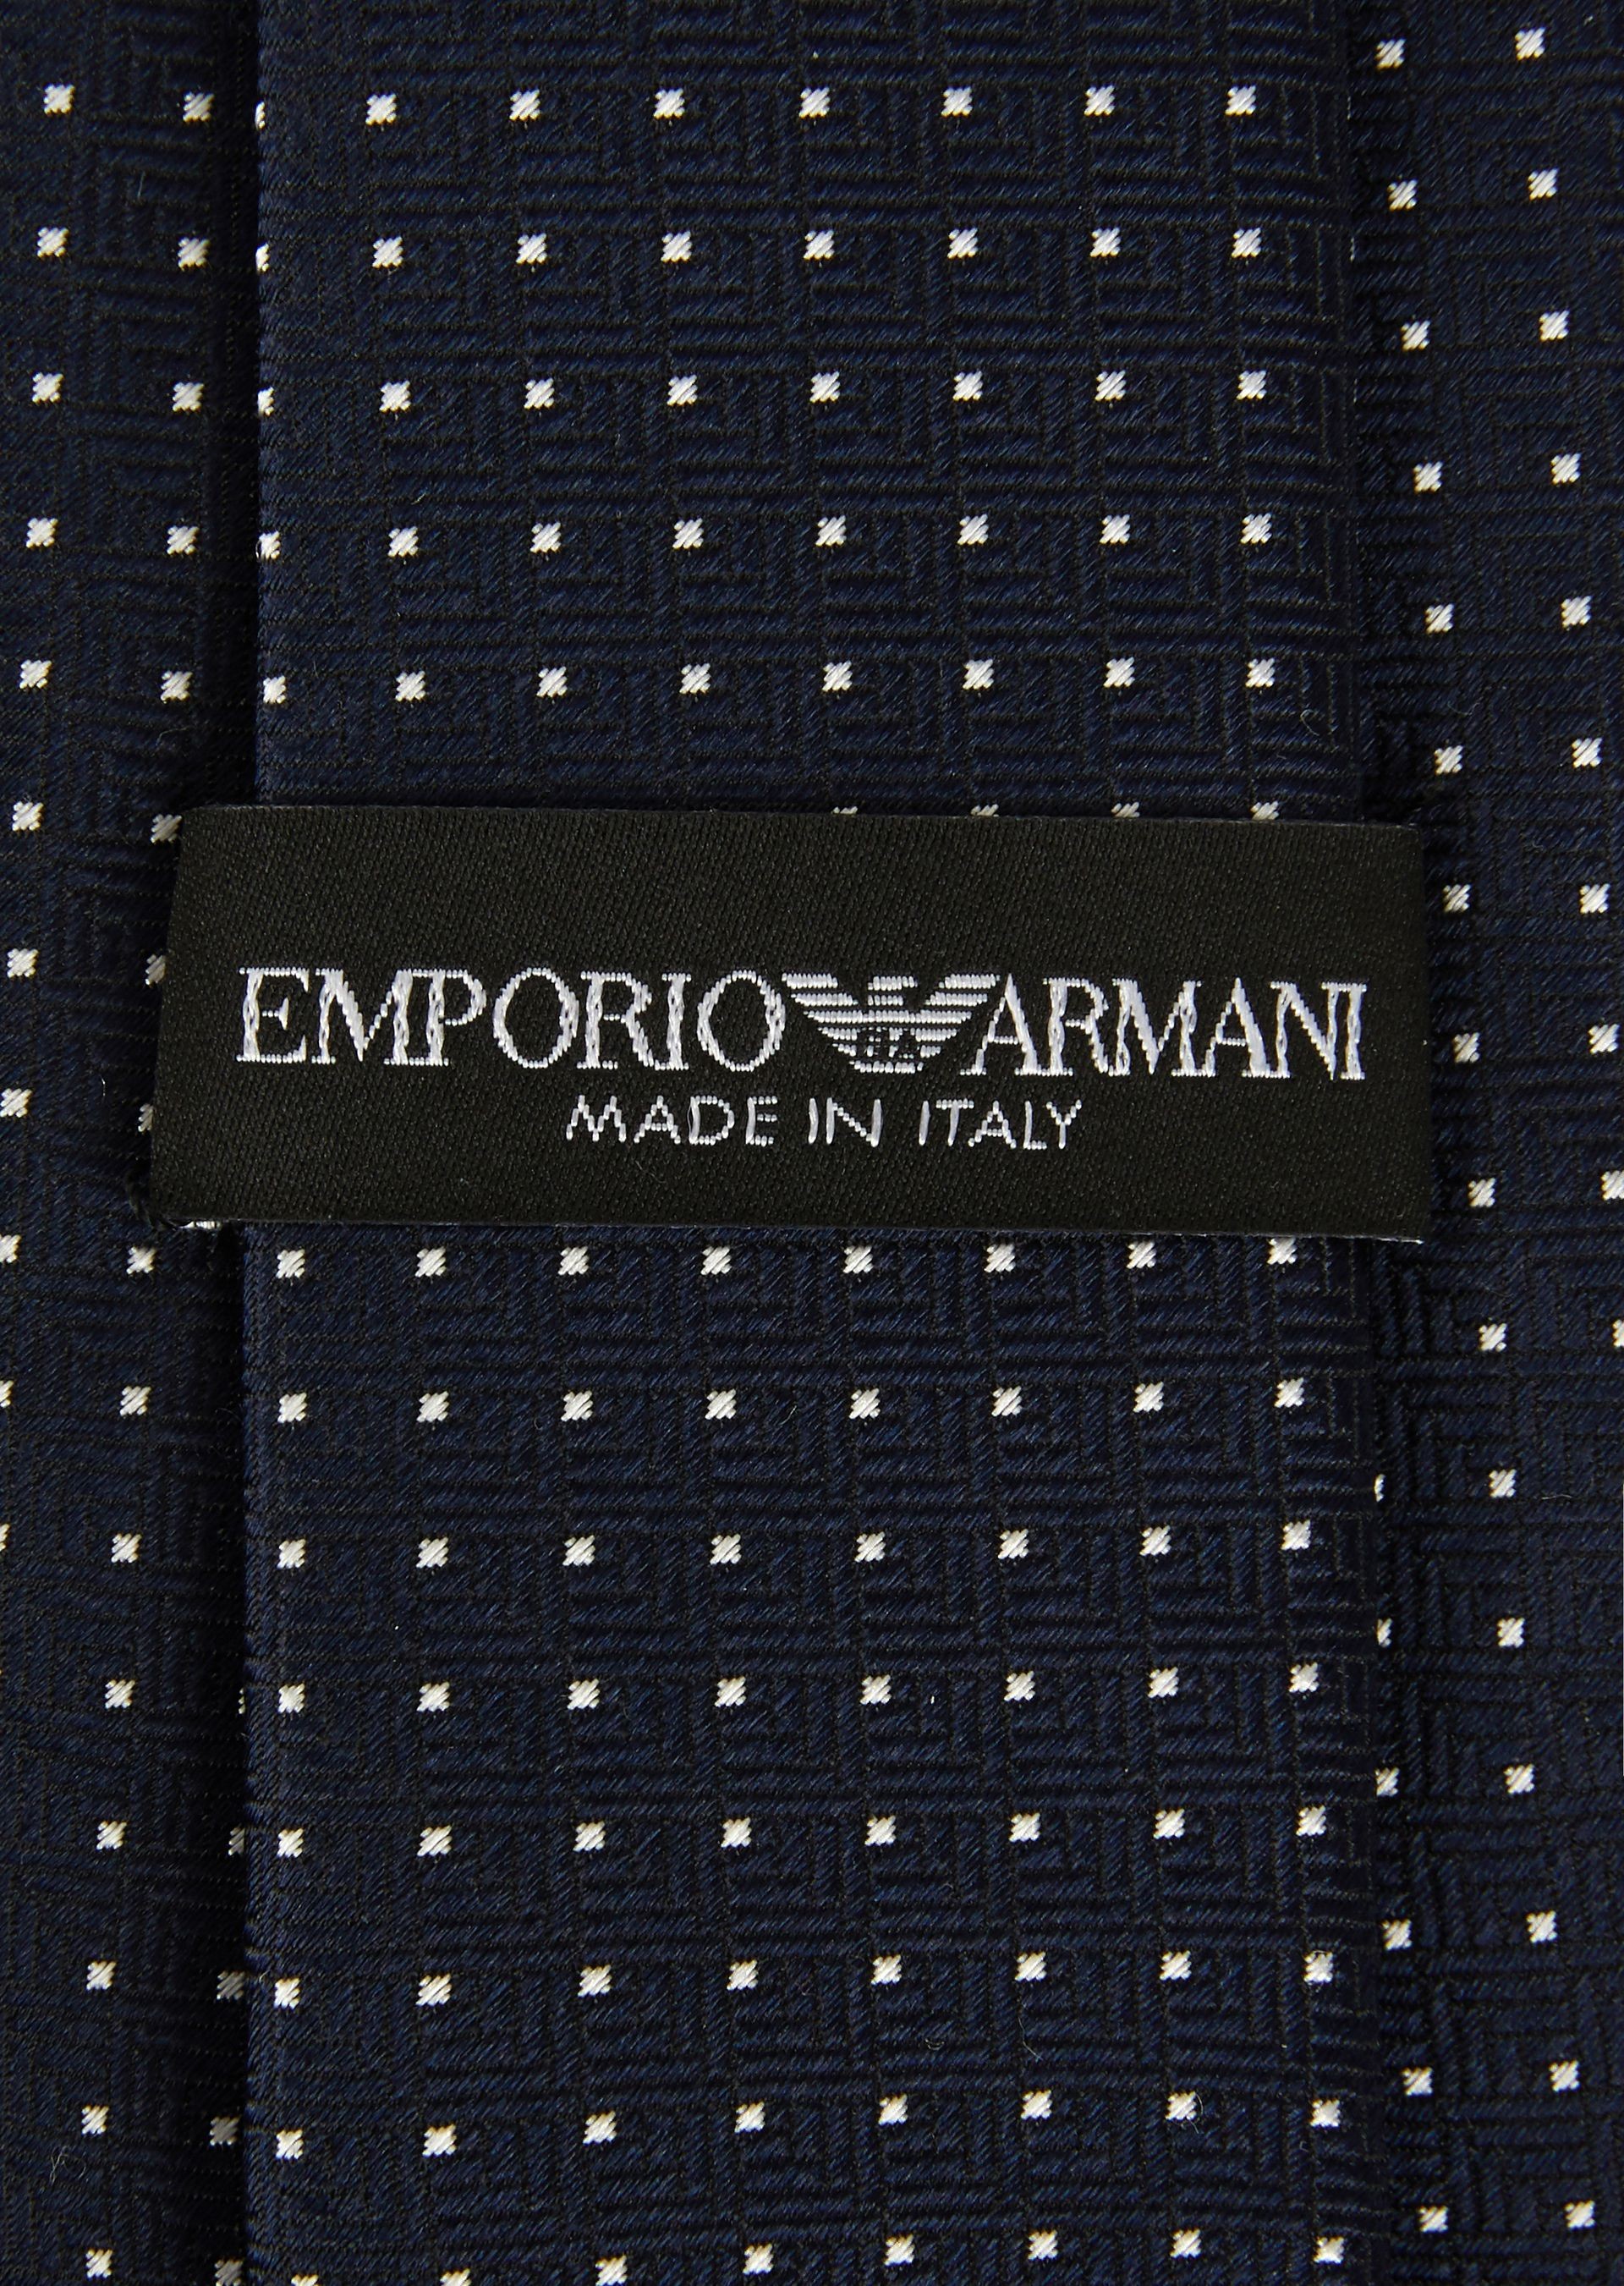 Emporio Armani Satin Silk Tie Micro Pois 3400758P301100036 - New Collection Spring Summer 2018